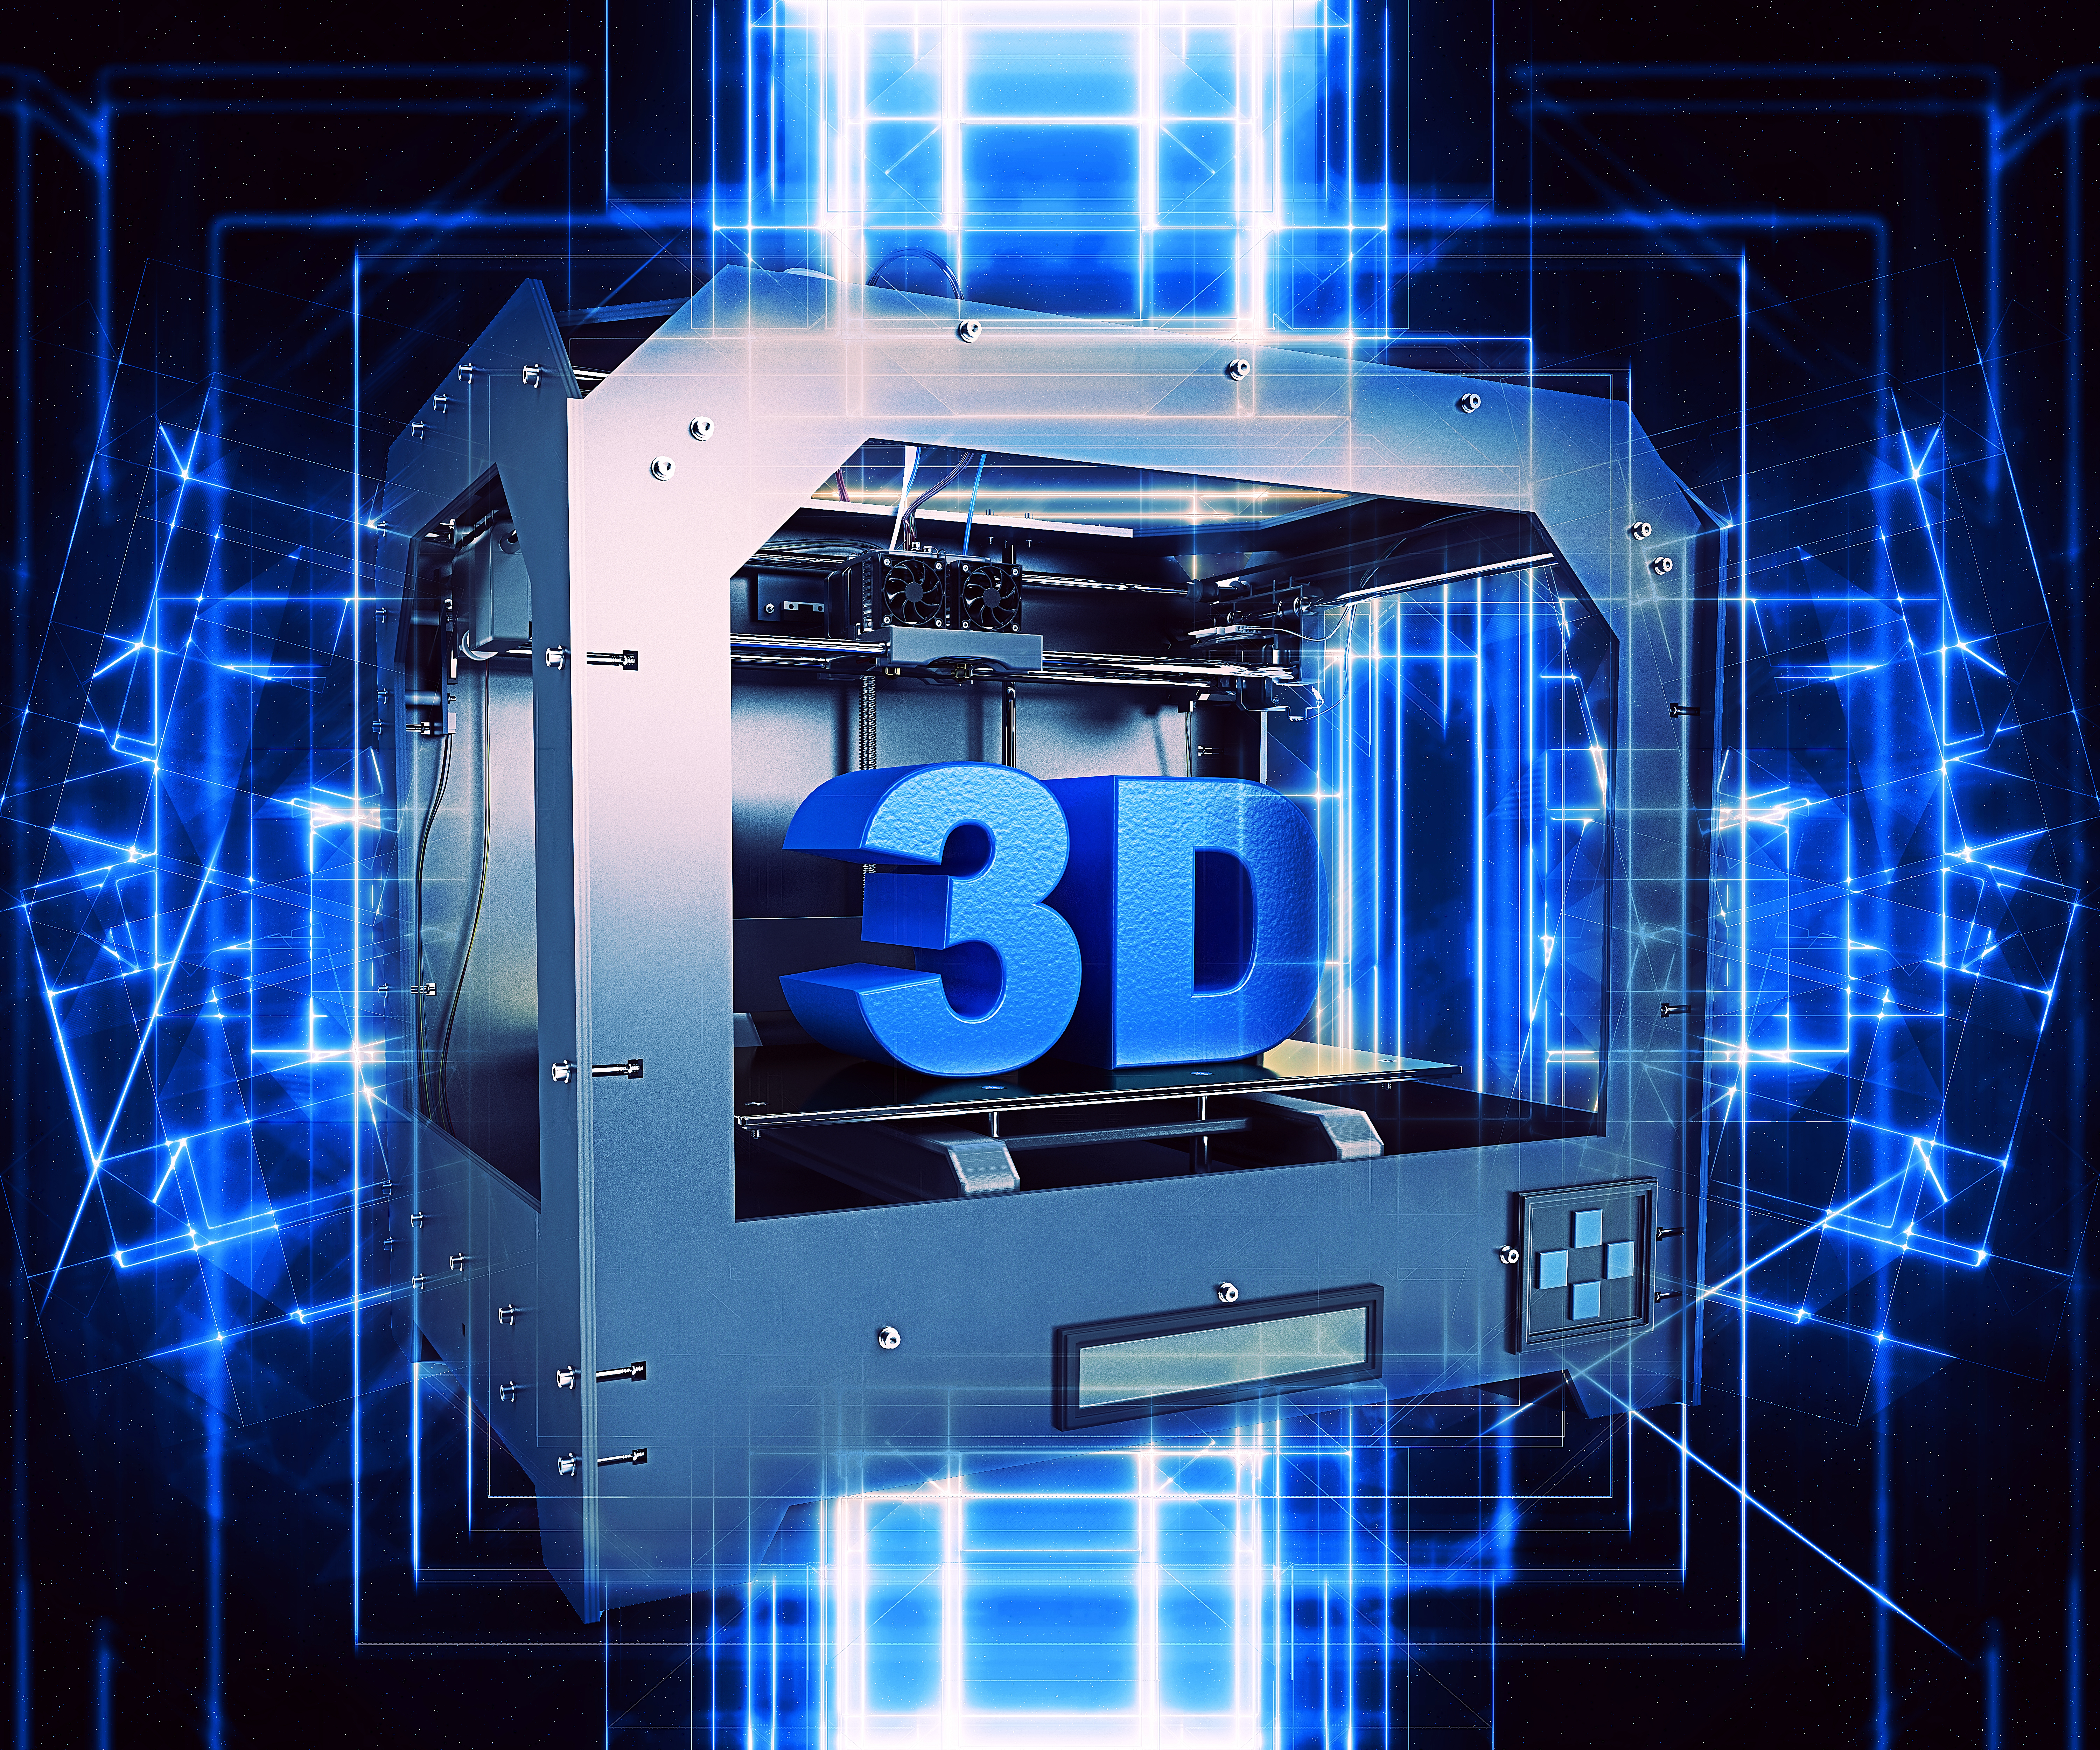 Hecho a mano Digital: Introducción a la impresión 3D aplicada a la artesanía